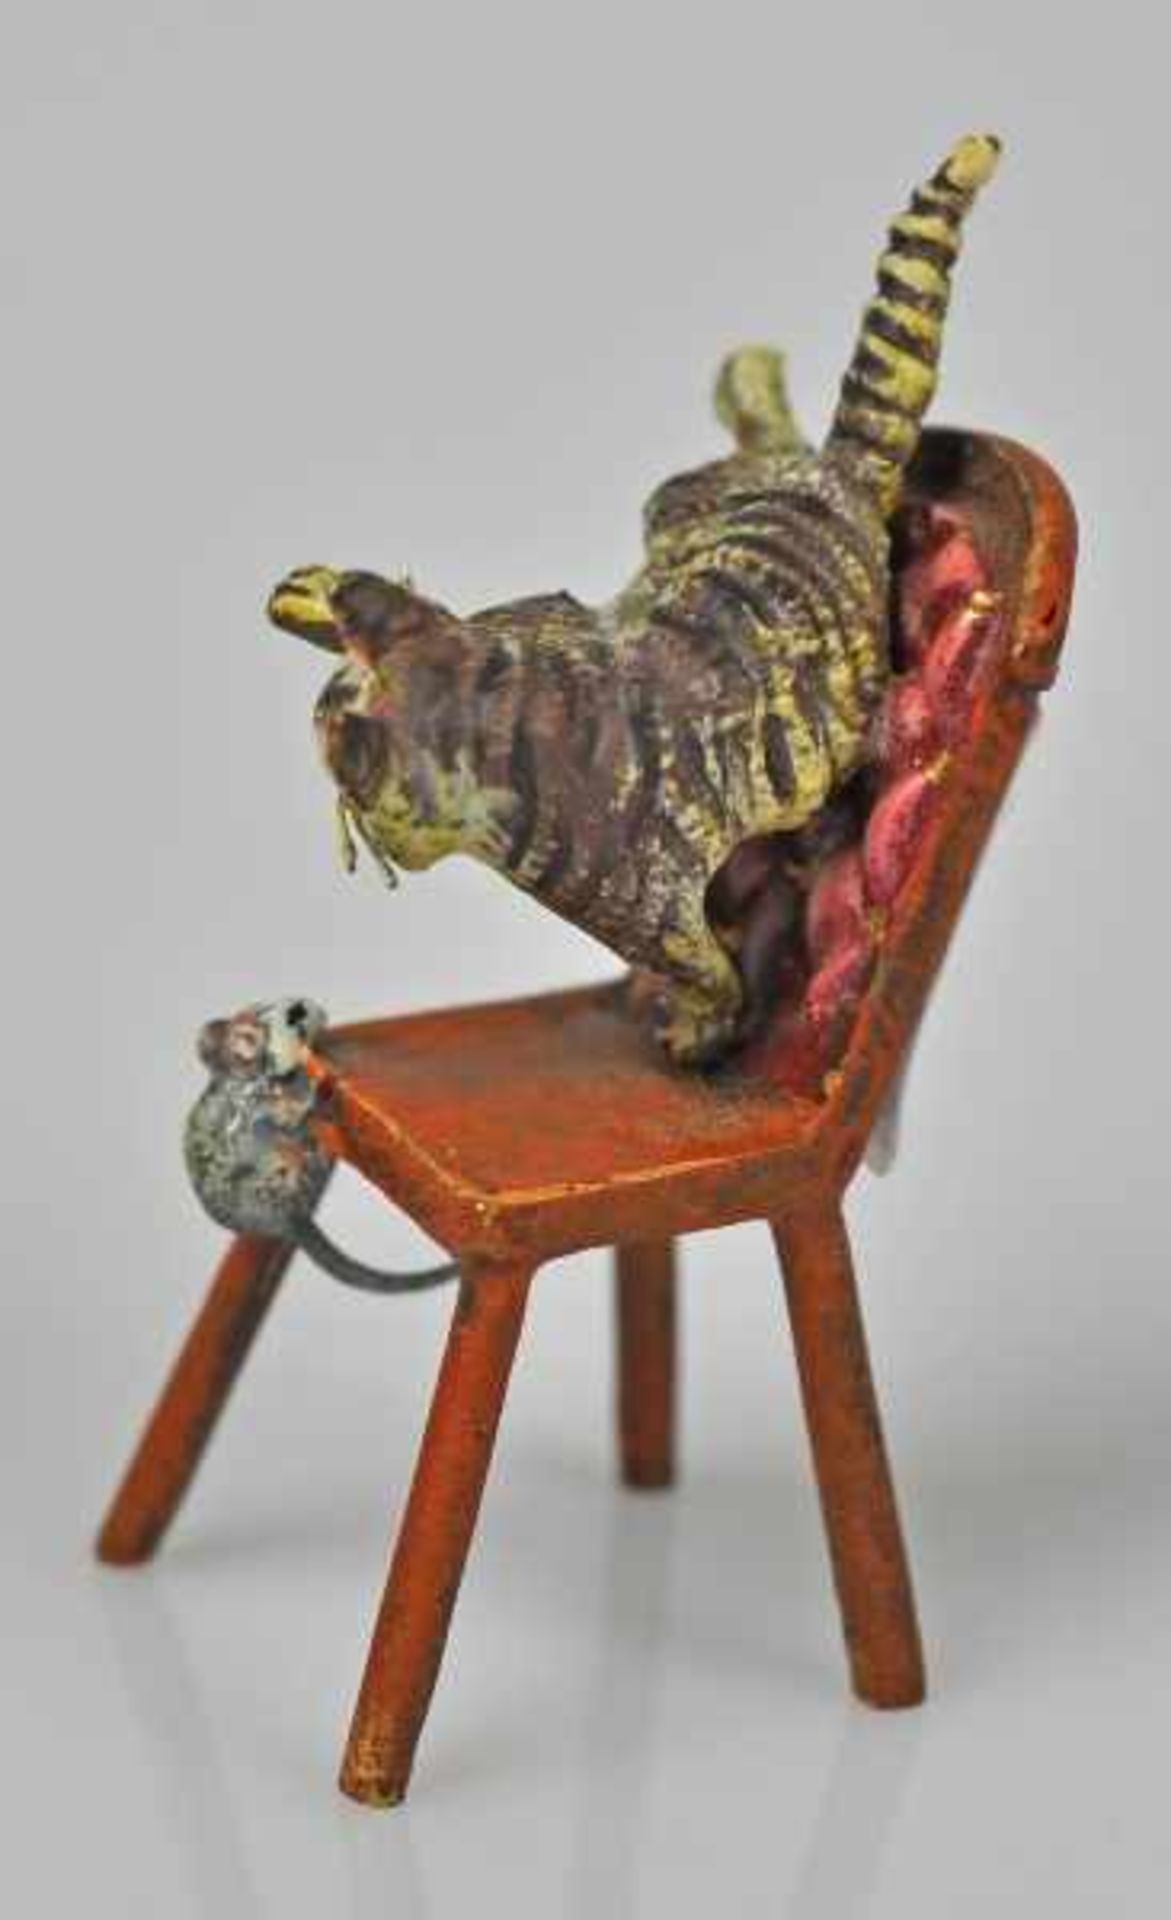 KATZE eine Maus jagend, auf Stuhl, Wiener Bronze, gemarkt u. bez. Bermann Wien, H 5cm - Image 2 of 5